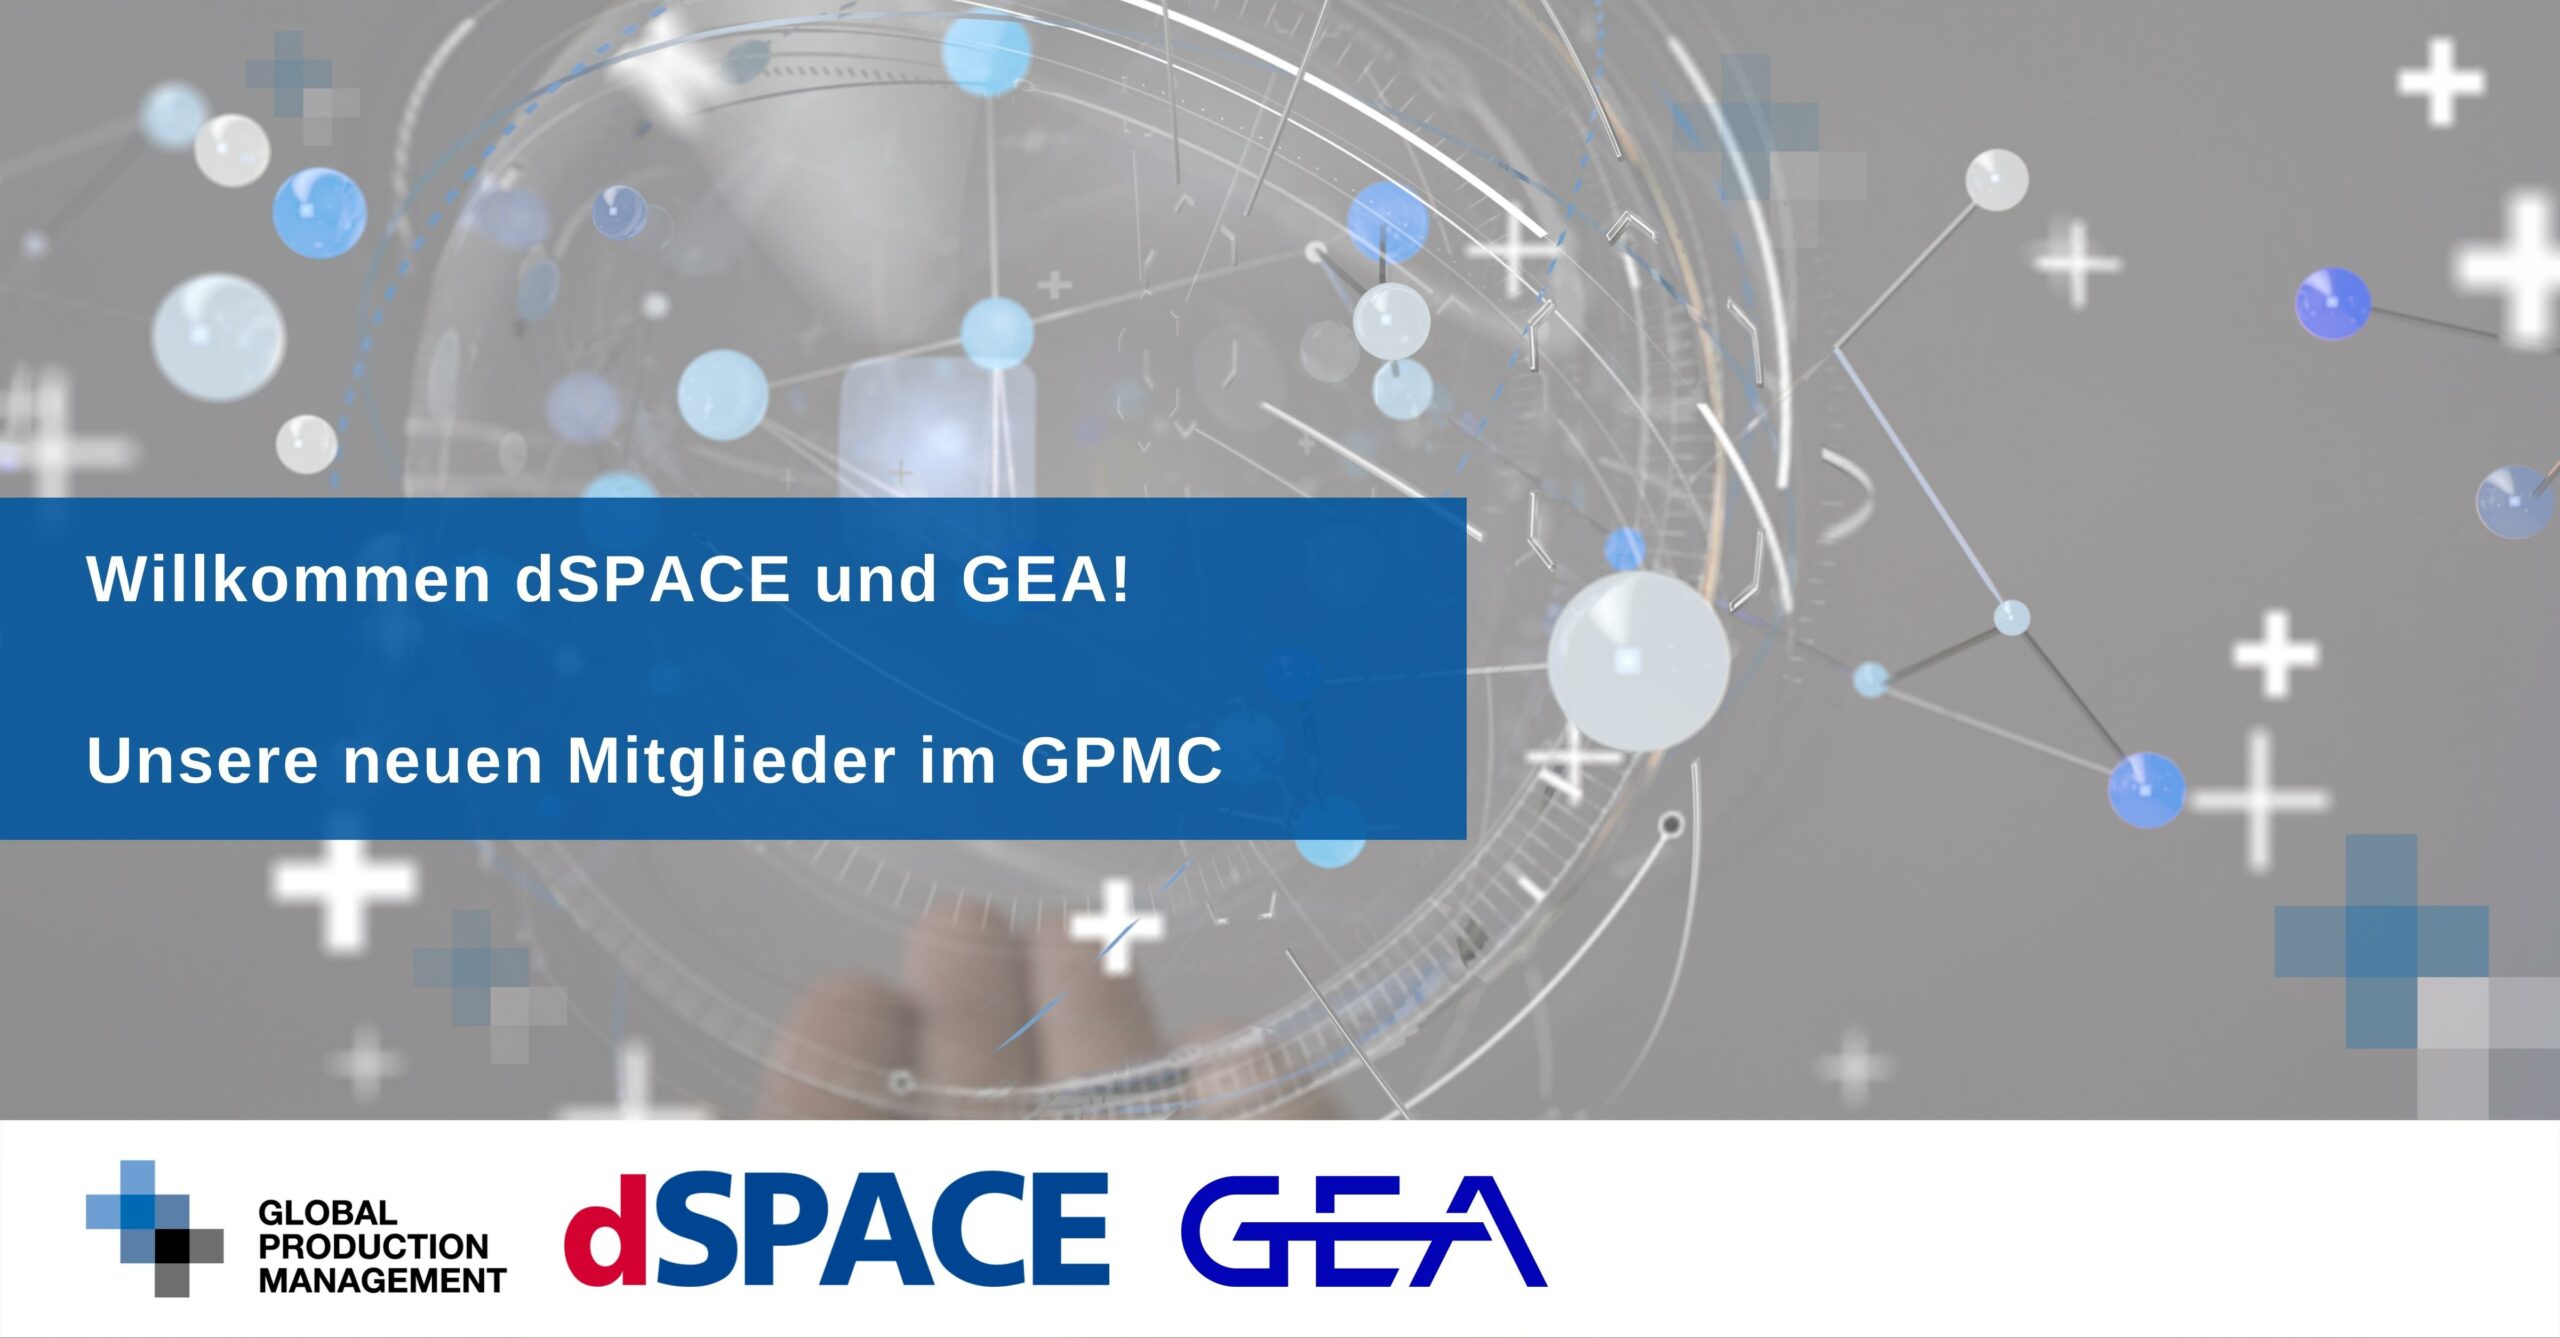 Willkommen-dSPACE-und-GEA-unsere-neuen-Mitglieder-im-GPMC-scaled Willkommen im GPMC, dSPACE und GEA!  